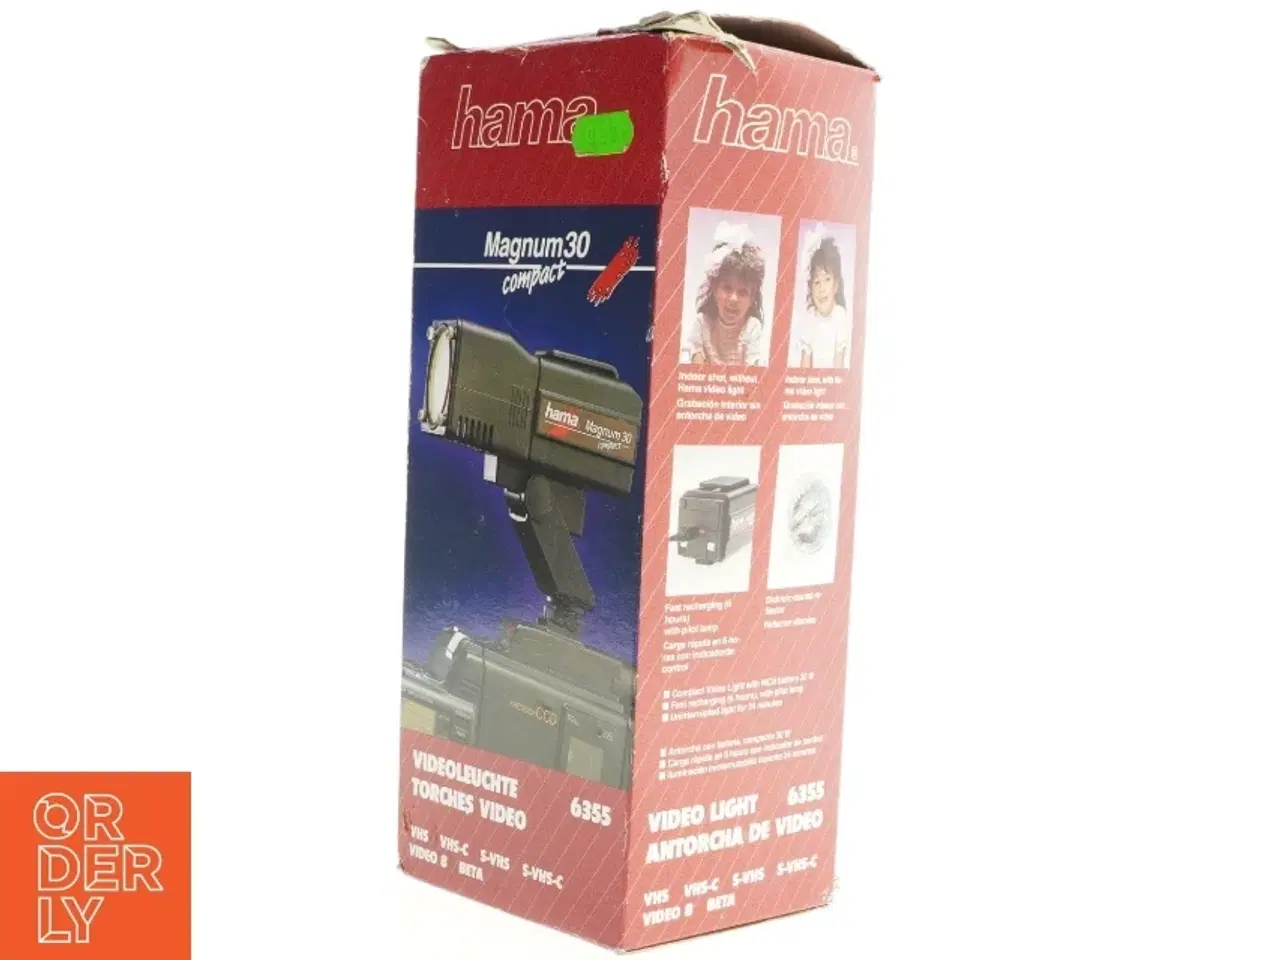 Billede 2 - Hama Magnum 30 Compact Videolys fra Hama (str. 15 x 6 cm)